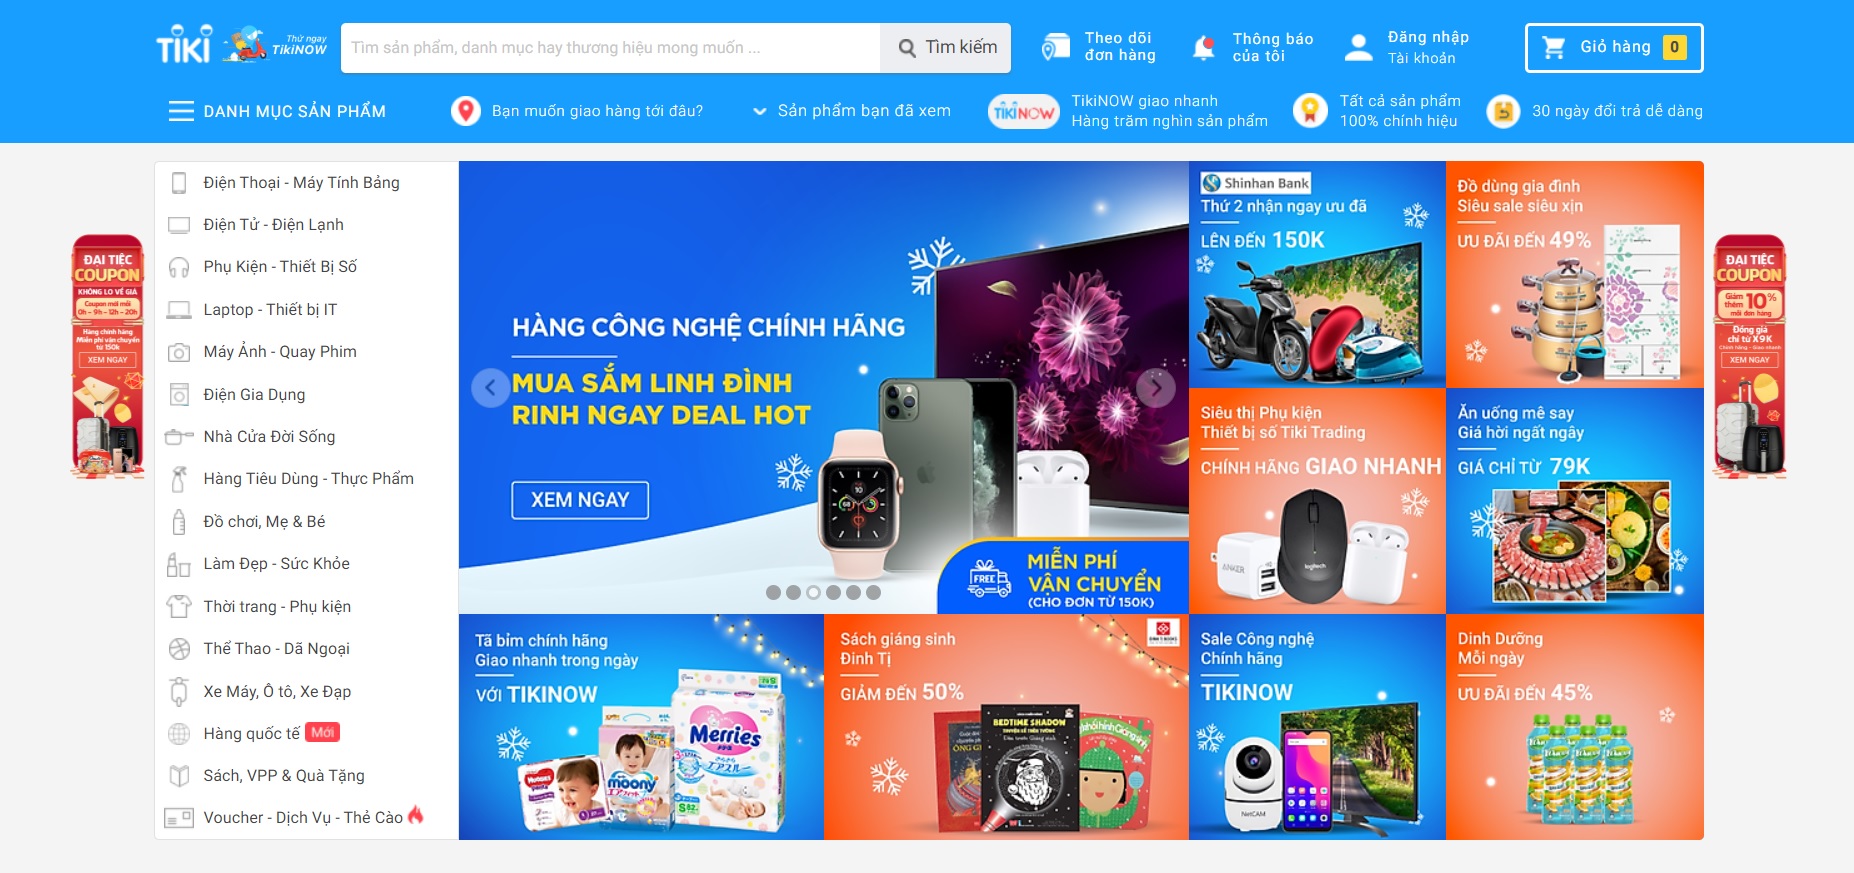 Tiki cũng thuộc Top 5 sàn thương mại điện tử hàng đầu Việt Nam